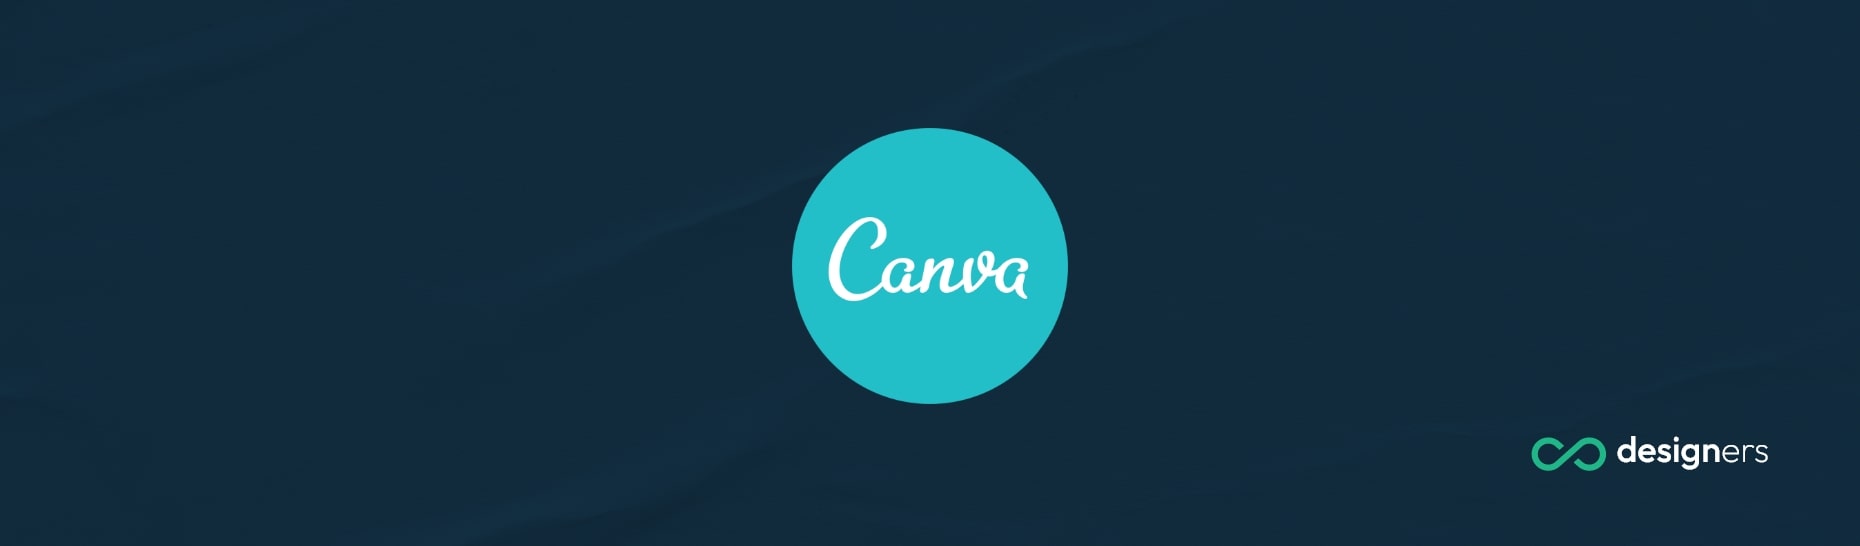 Can You Make Door Hangers in Canva?